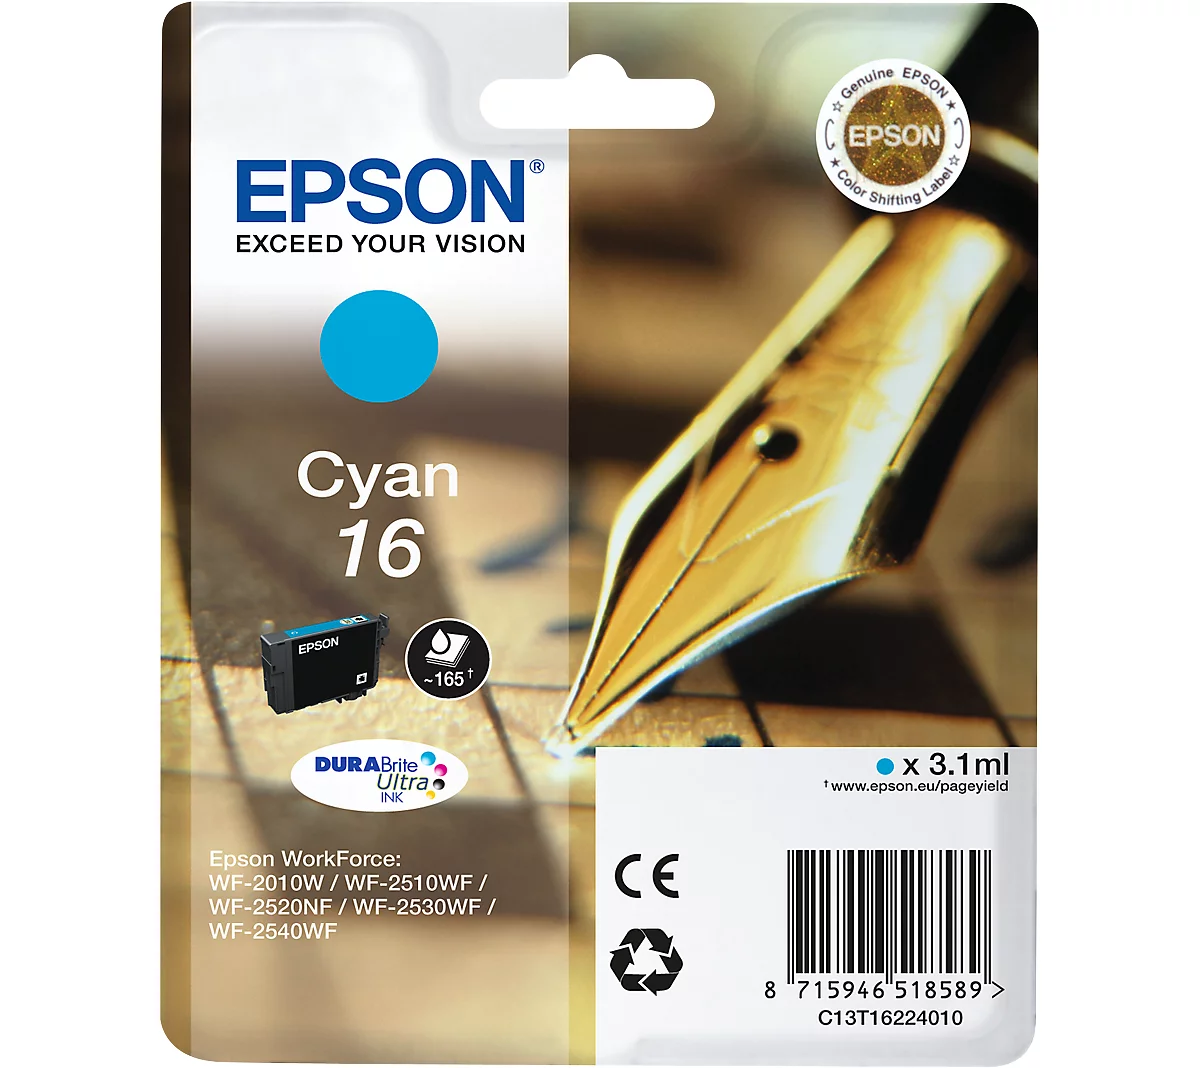 Original Epson Tintenpatrone 16, Einzelpack, cyan